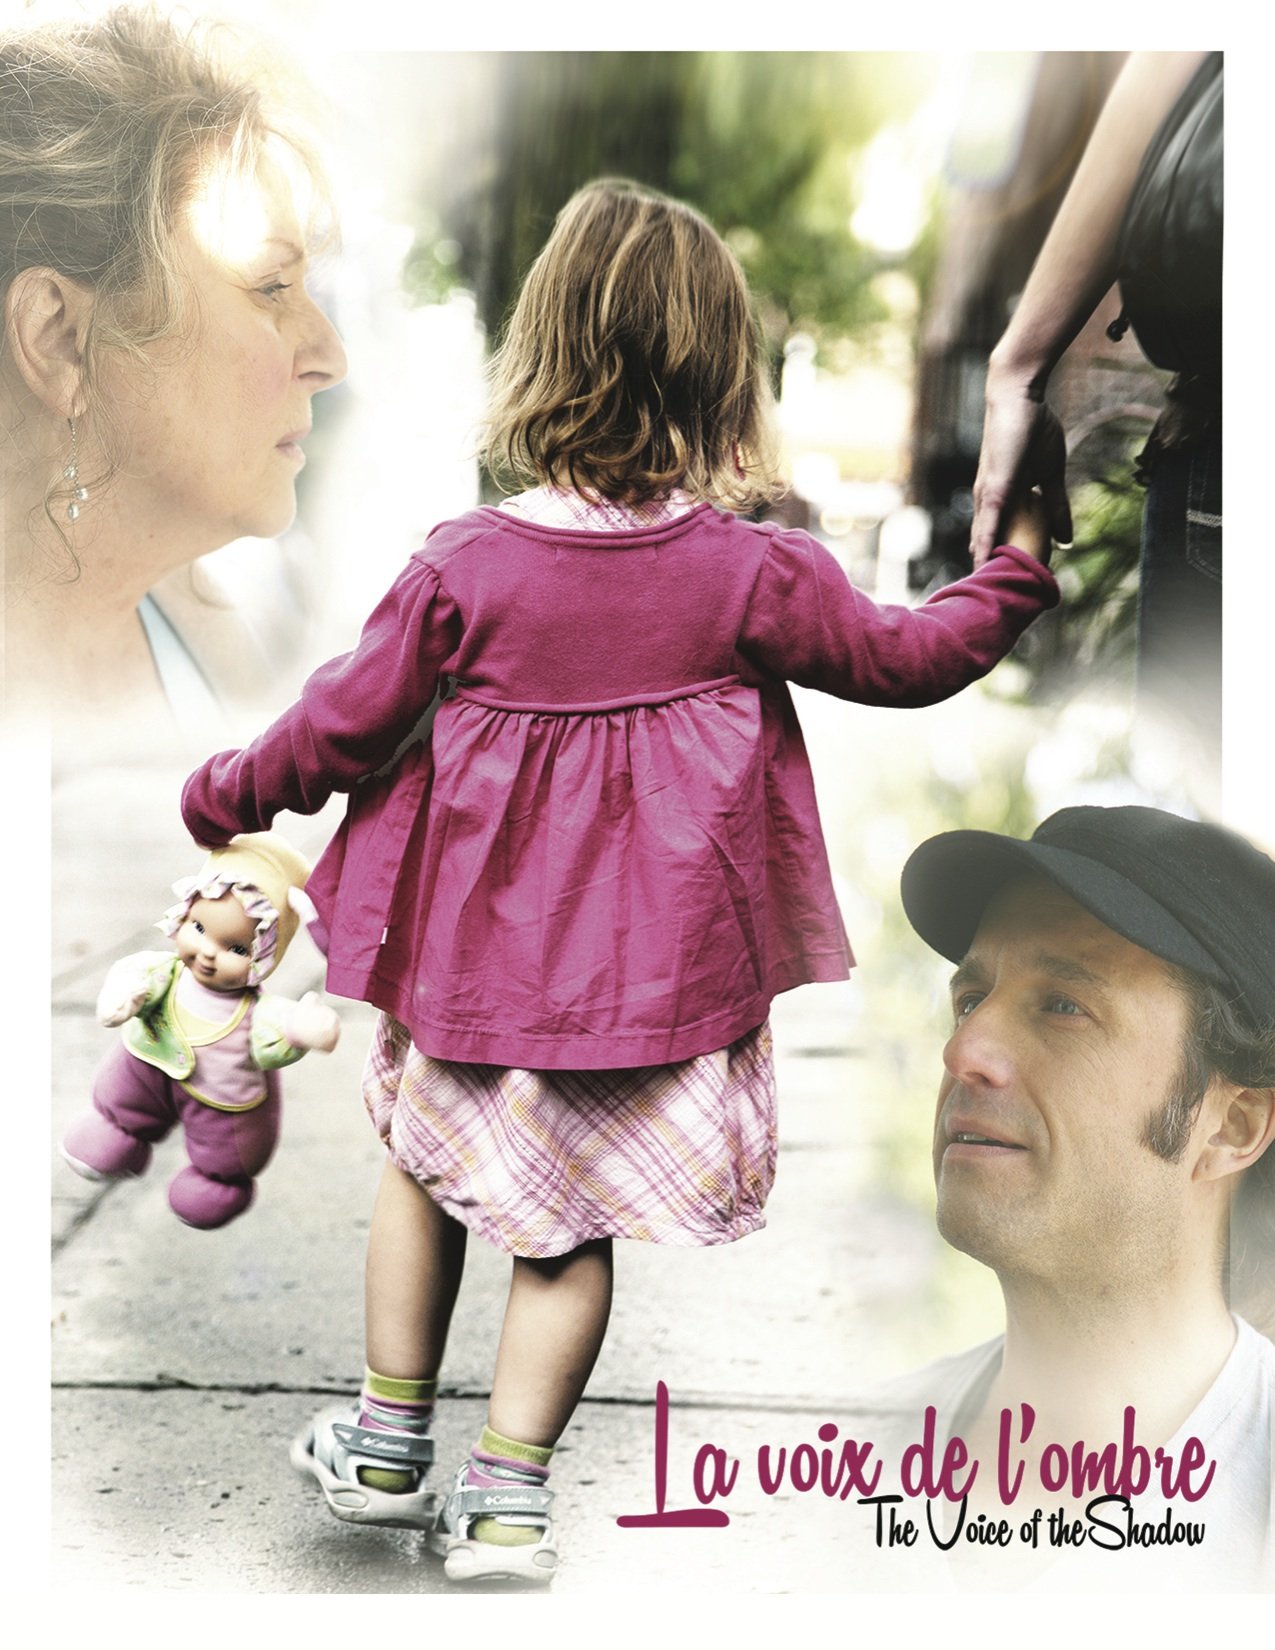 Poster of the movie La Voix de l'ombre